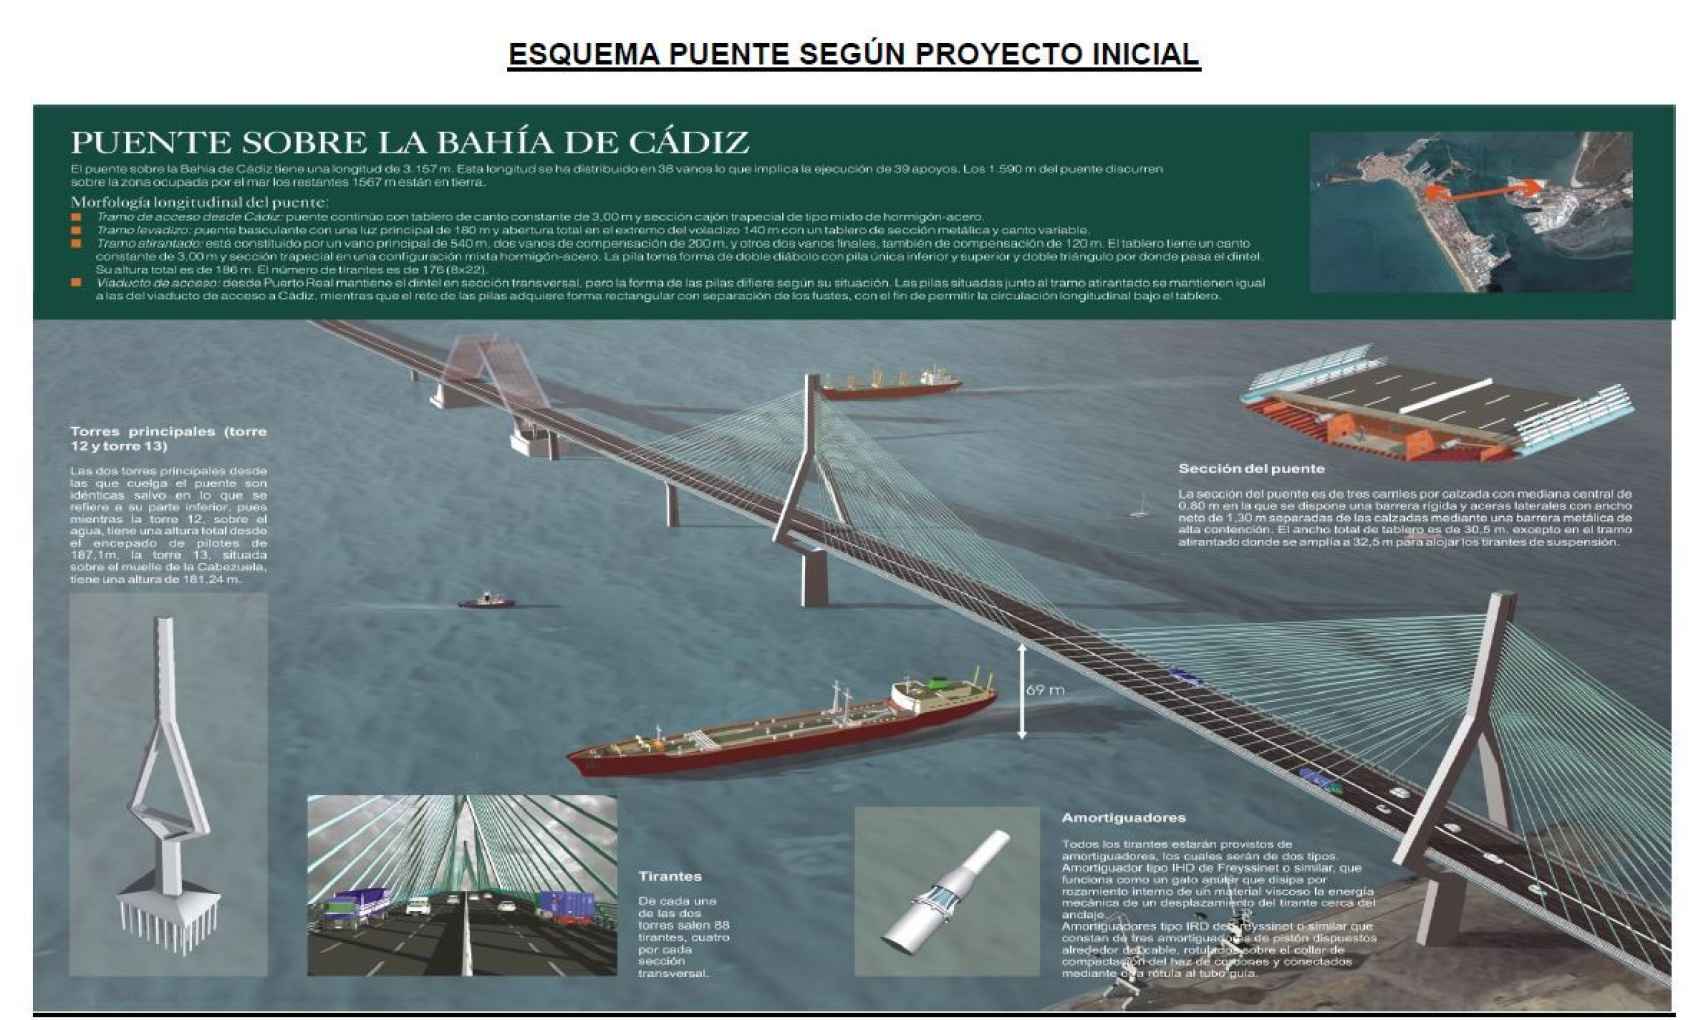 Proyecto inicial del puente sobre la bahía de Cádiz./